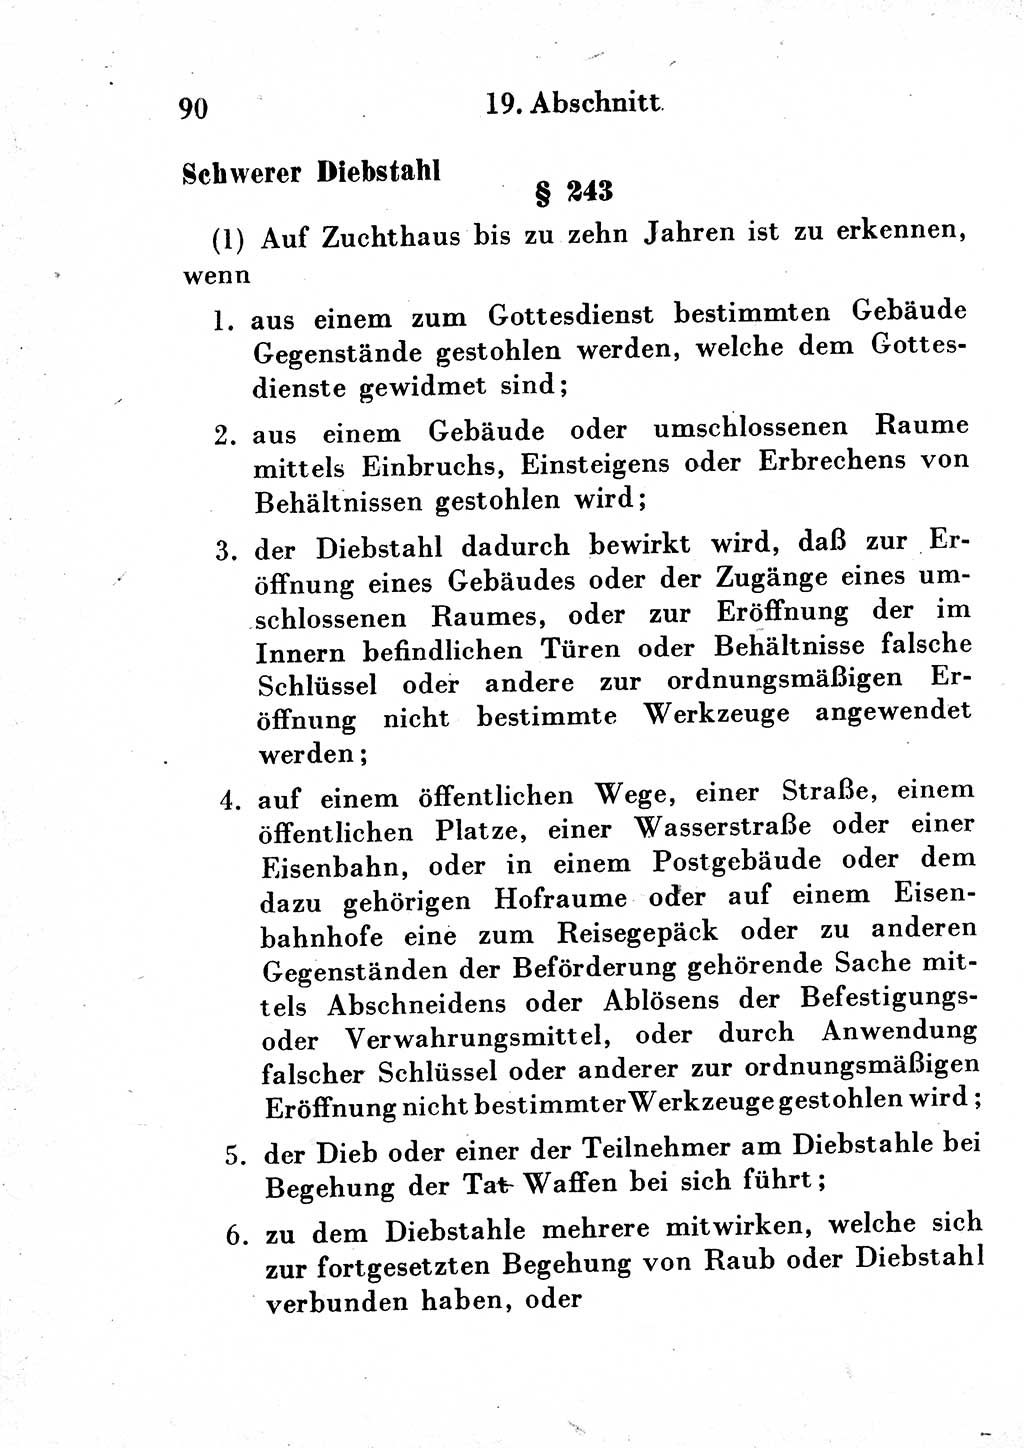 Strafgesetzbuch (StGB) und andere Strafgesetze [Deutsche Demokratische Republik (DDR)] 1954, Seite 90 (StGB Strafges. DDR 1954, S. 90)